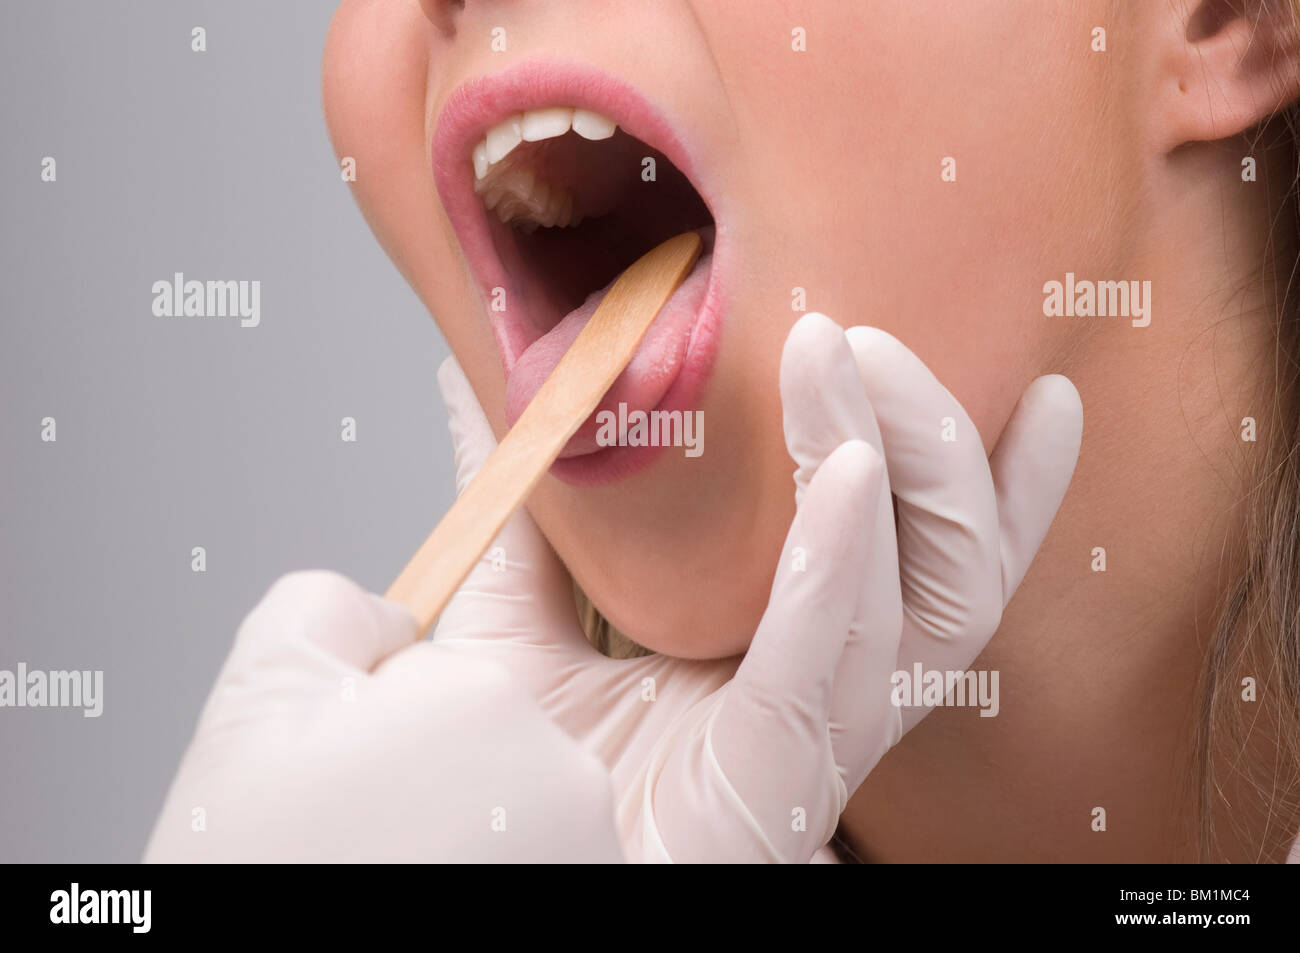 Выделения слюны во рту. Гиперсаливация полости рта. Глоссодиния полости рта.